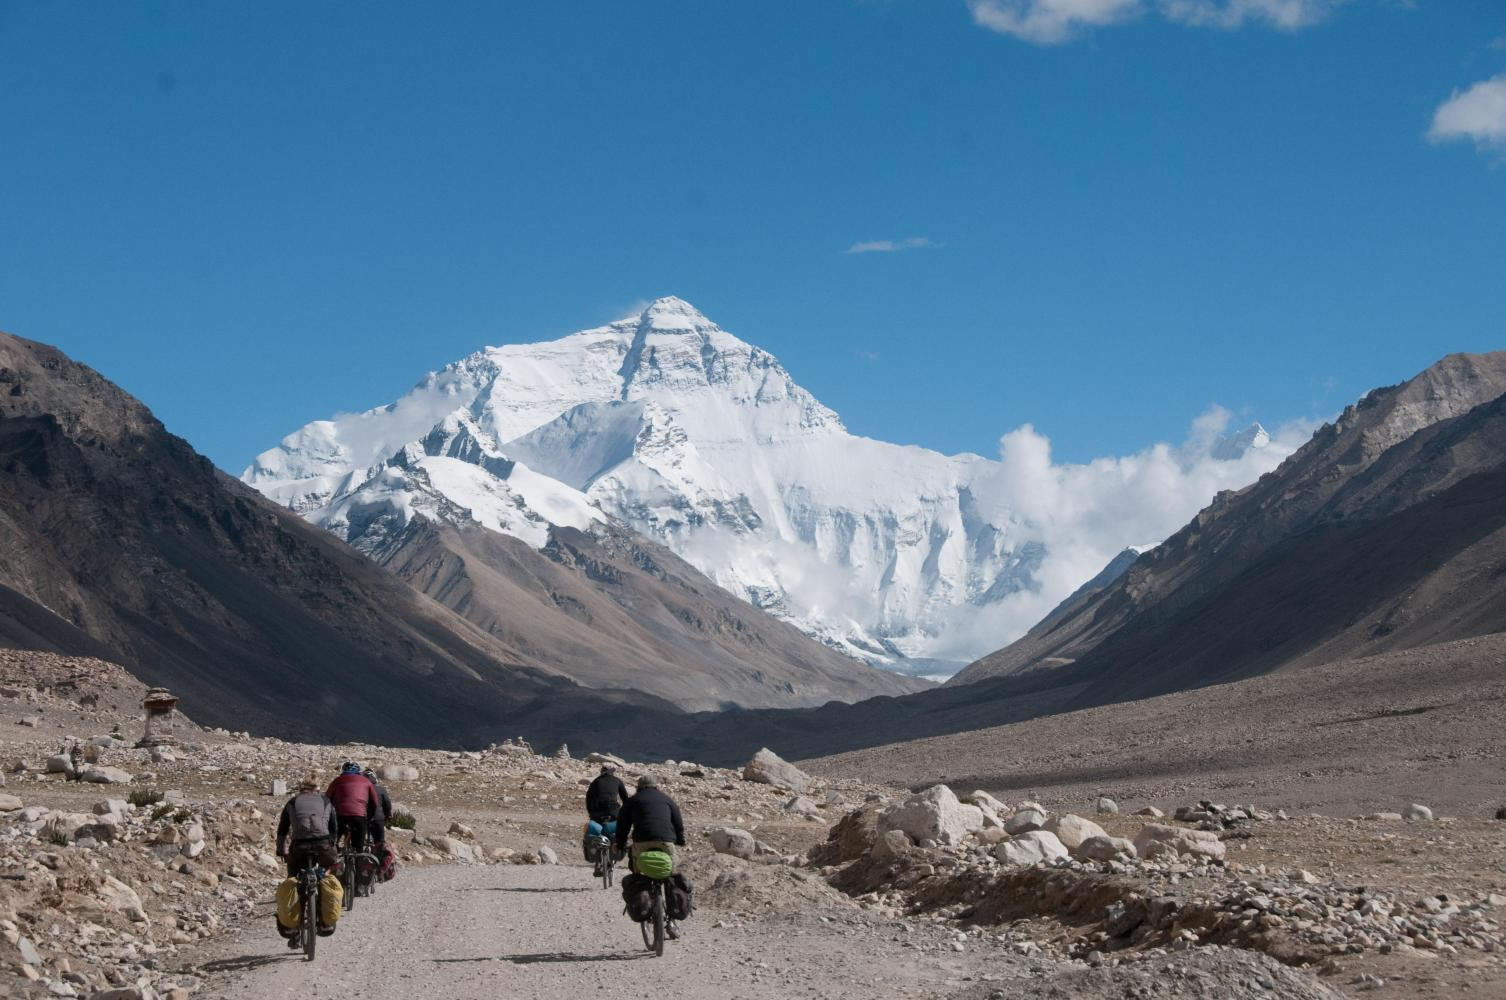 Памир гималаи. Эверест, Непал/Тибет. Базовый лагерь Эвереста Тибет. Подножье горы Эверест. Лхаса Эверест.